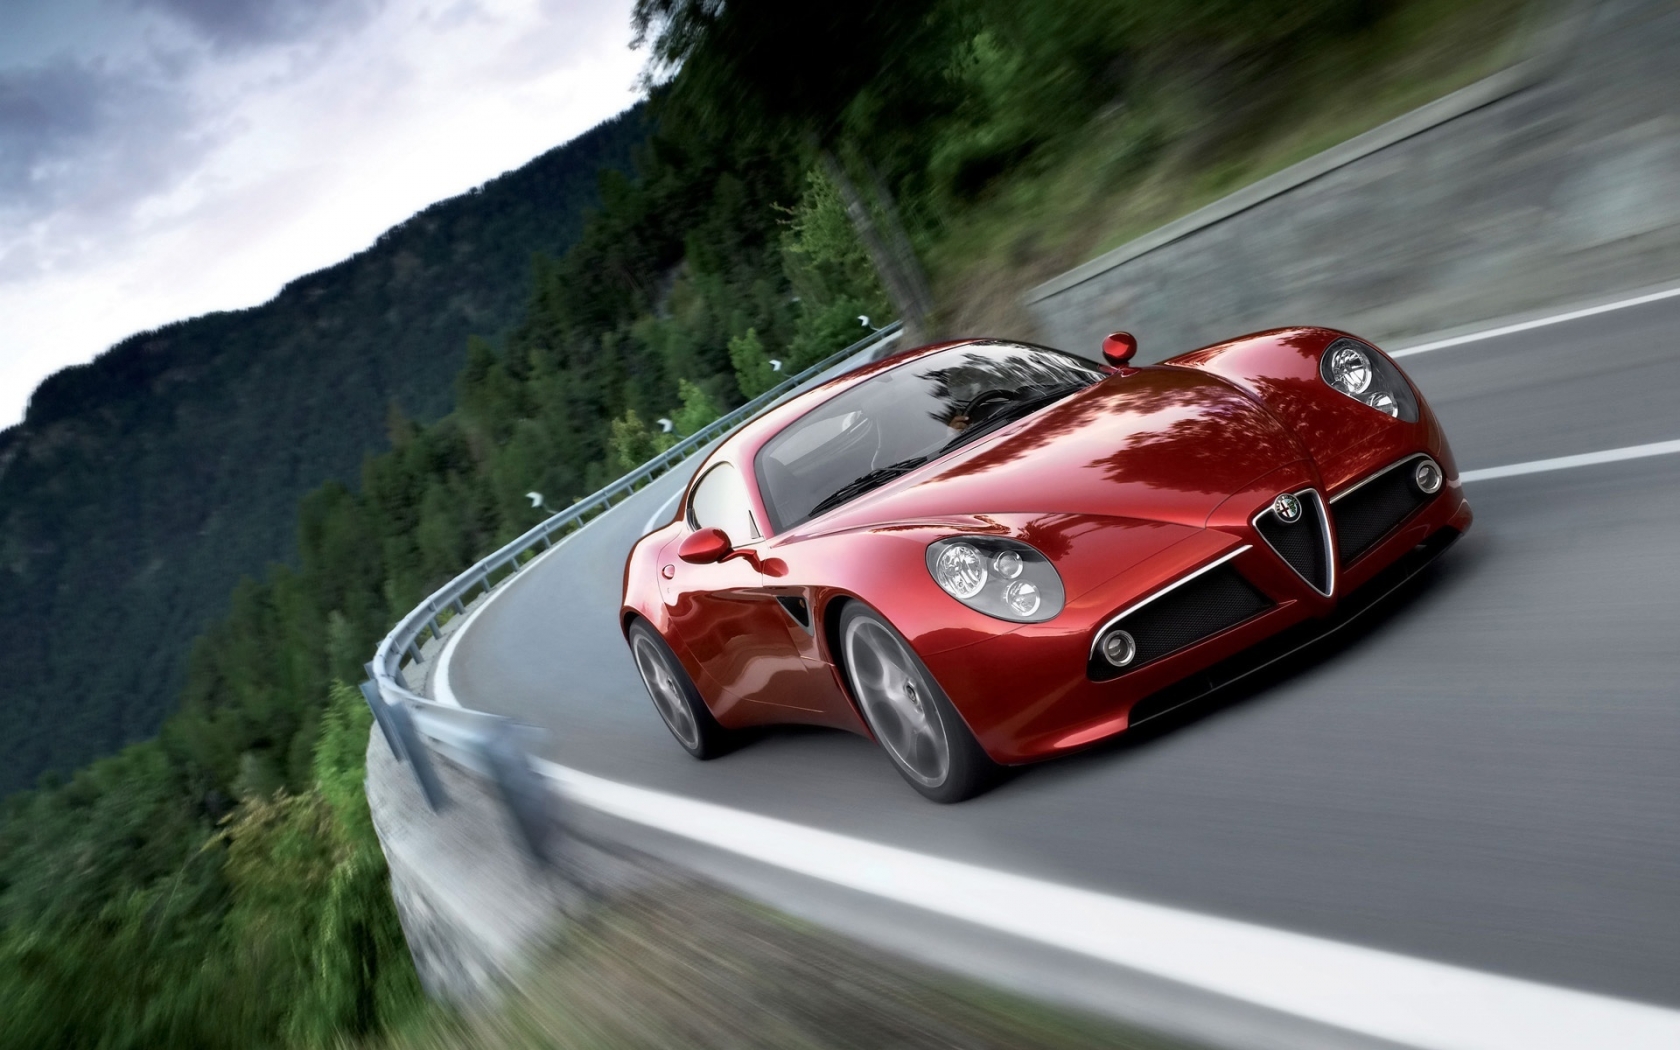 Alfa Romeo Competizione 2009 for 1680 x 1050 widescreen resolution